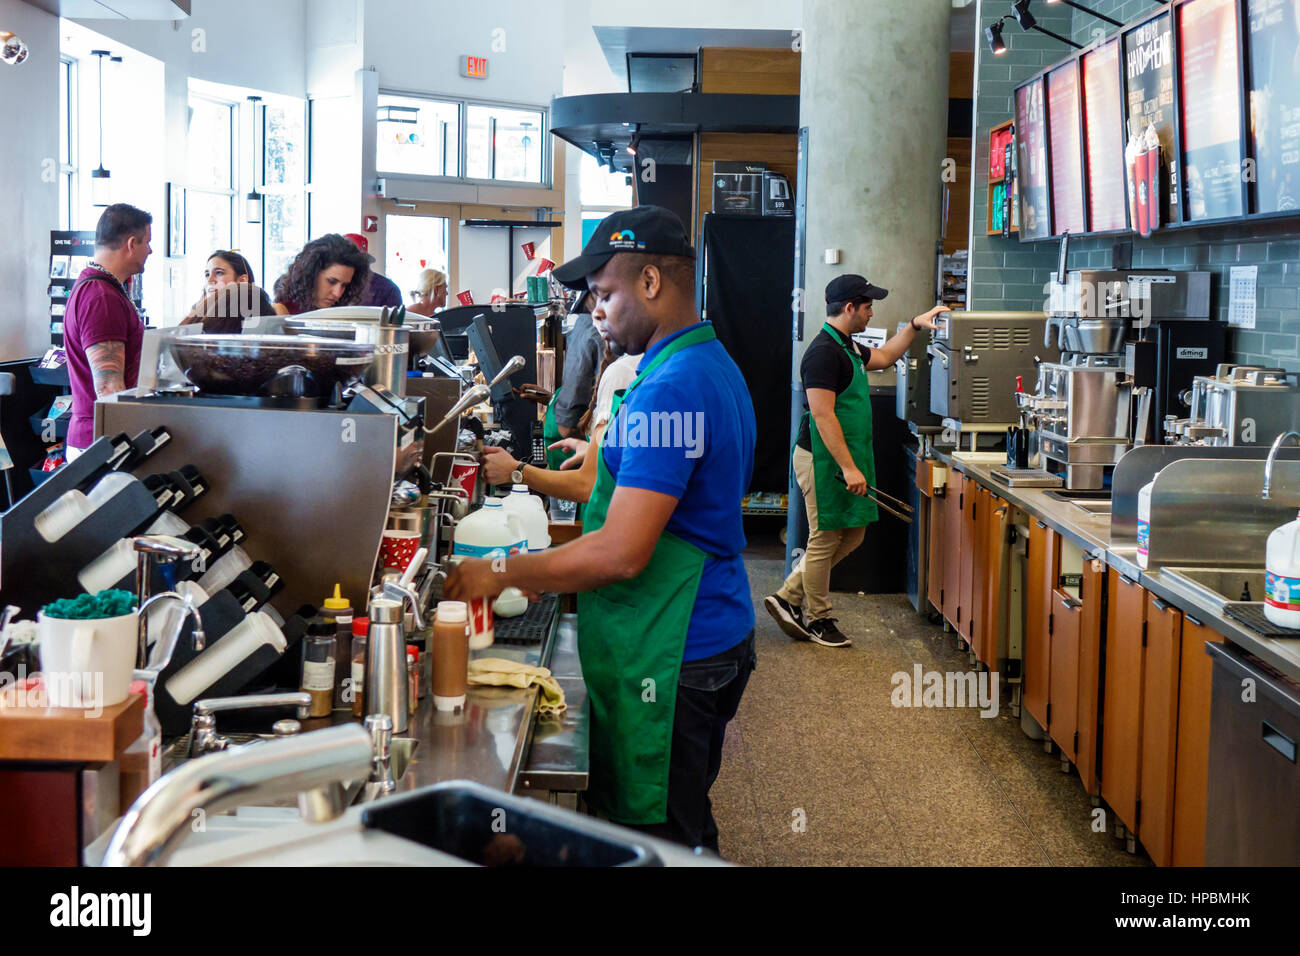 Resultado de imagen para foto de trabajadores de cafeteria en miami